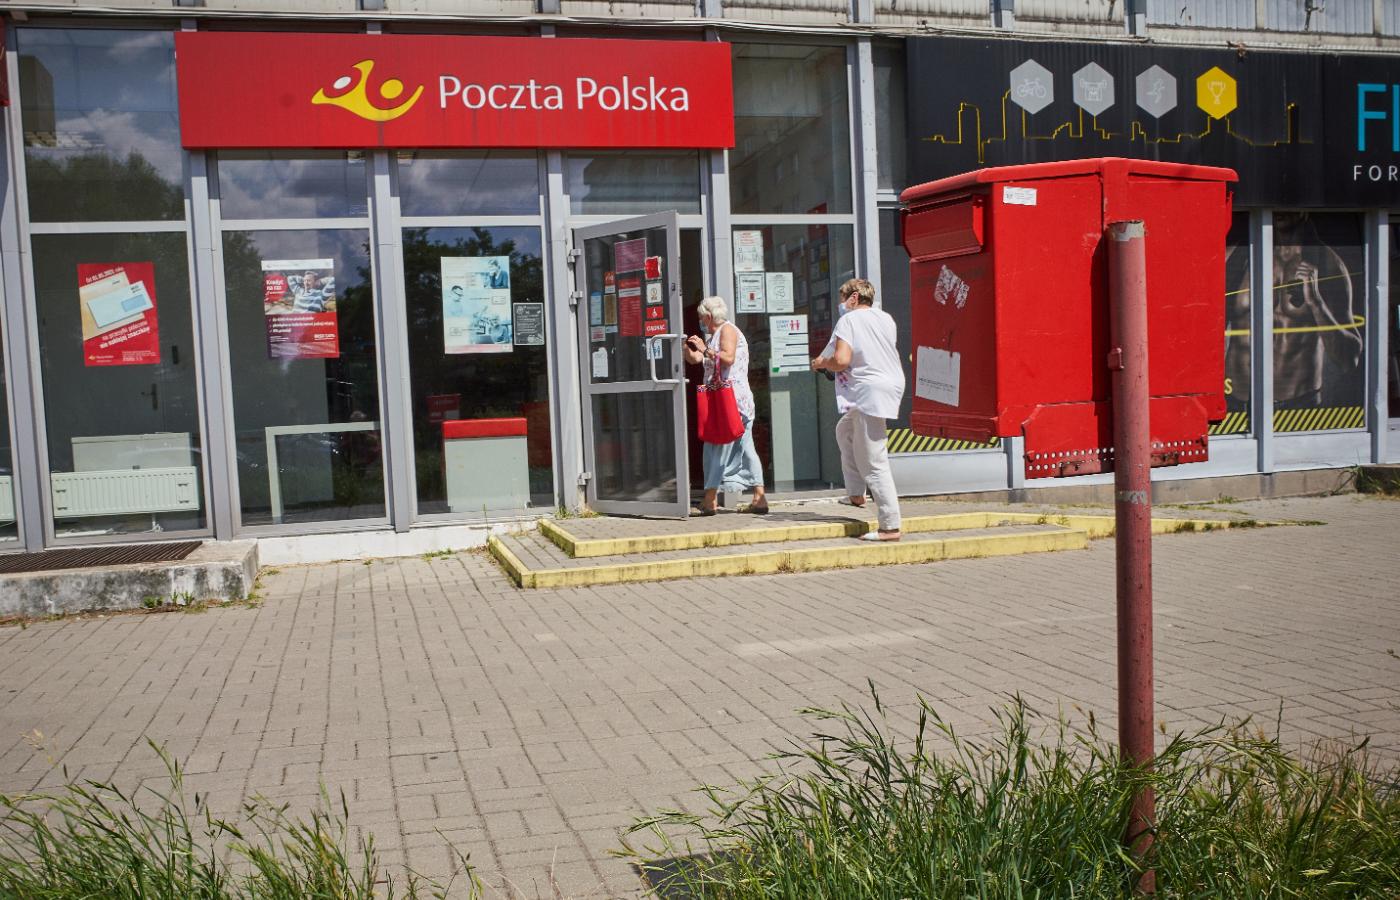 Urząd pocztowy w Łodzi. Zdjęcie z 29 lipca 2021 r.